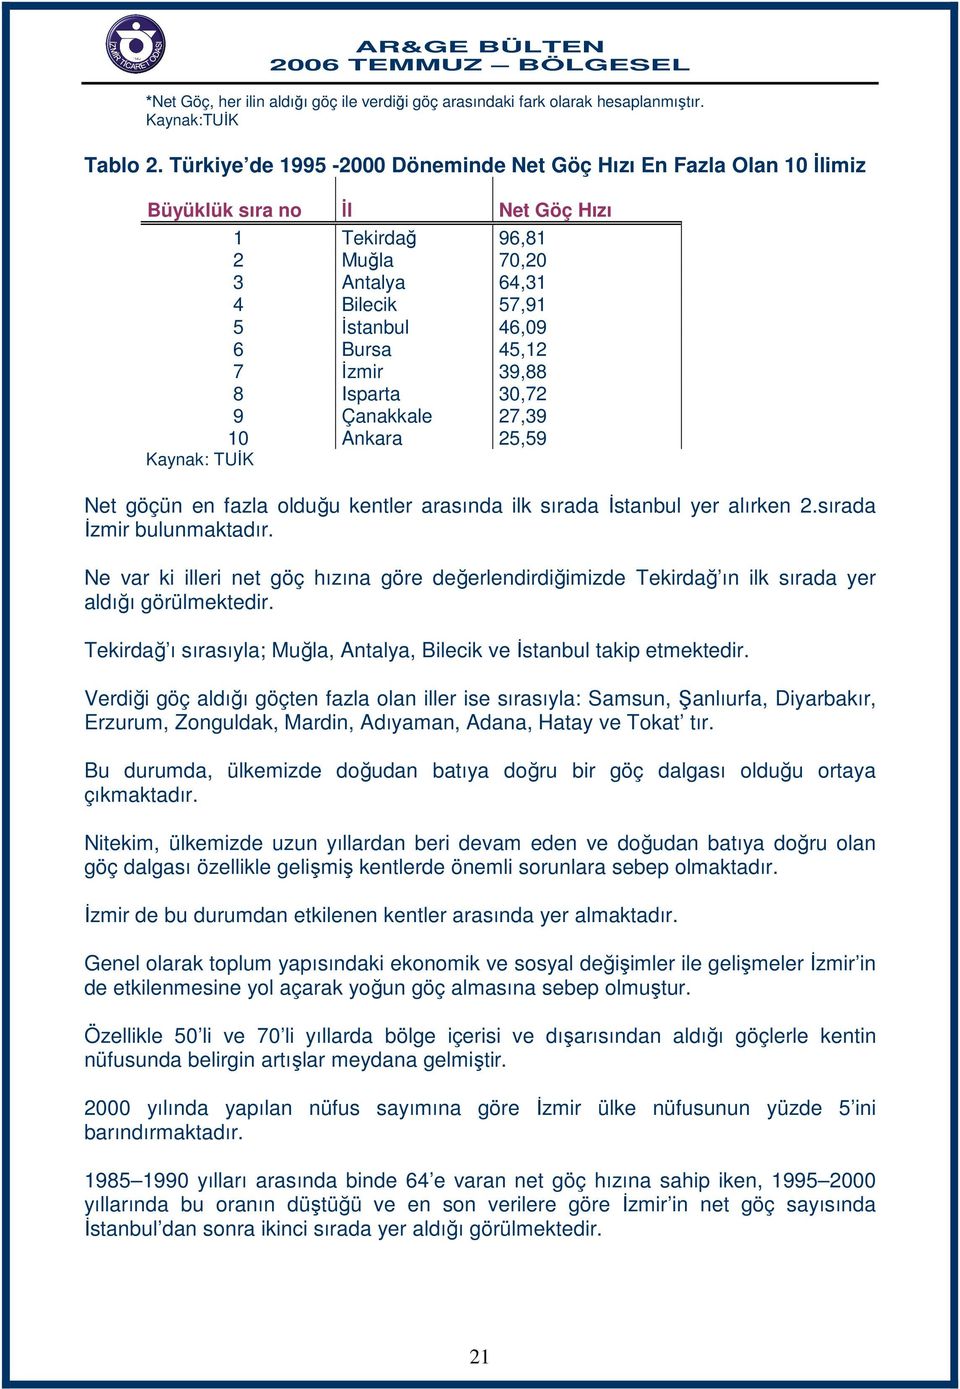 İzmir 39,88 8 Isparta 30,72 9 Çanakkale 27,39 10 Ankara 25,59 Net göçün en fazla olduğu kentler arasında ilk sırada İstanbul yer alırken 2.sırada İzmir bulunmaktadır.